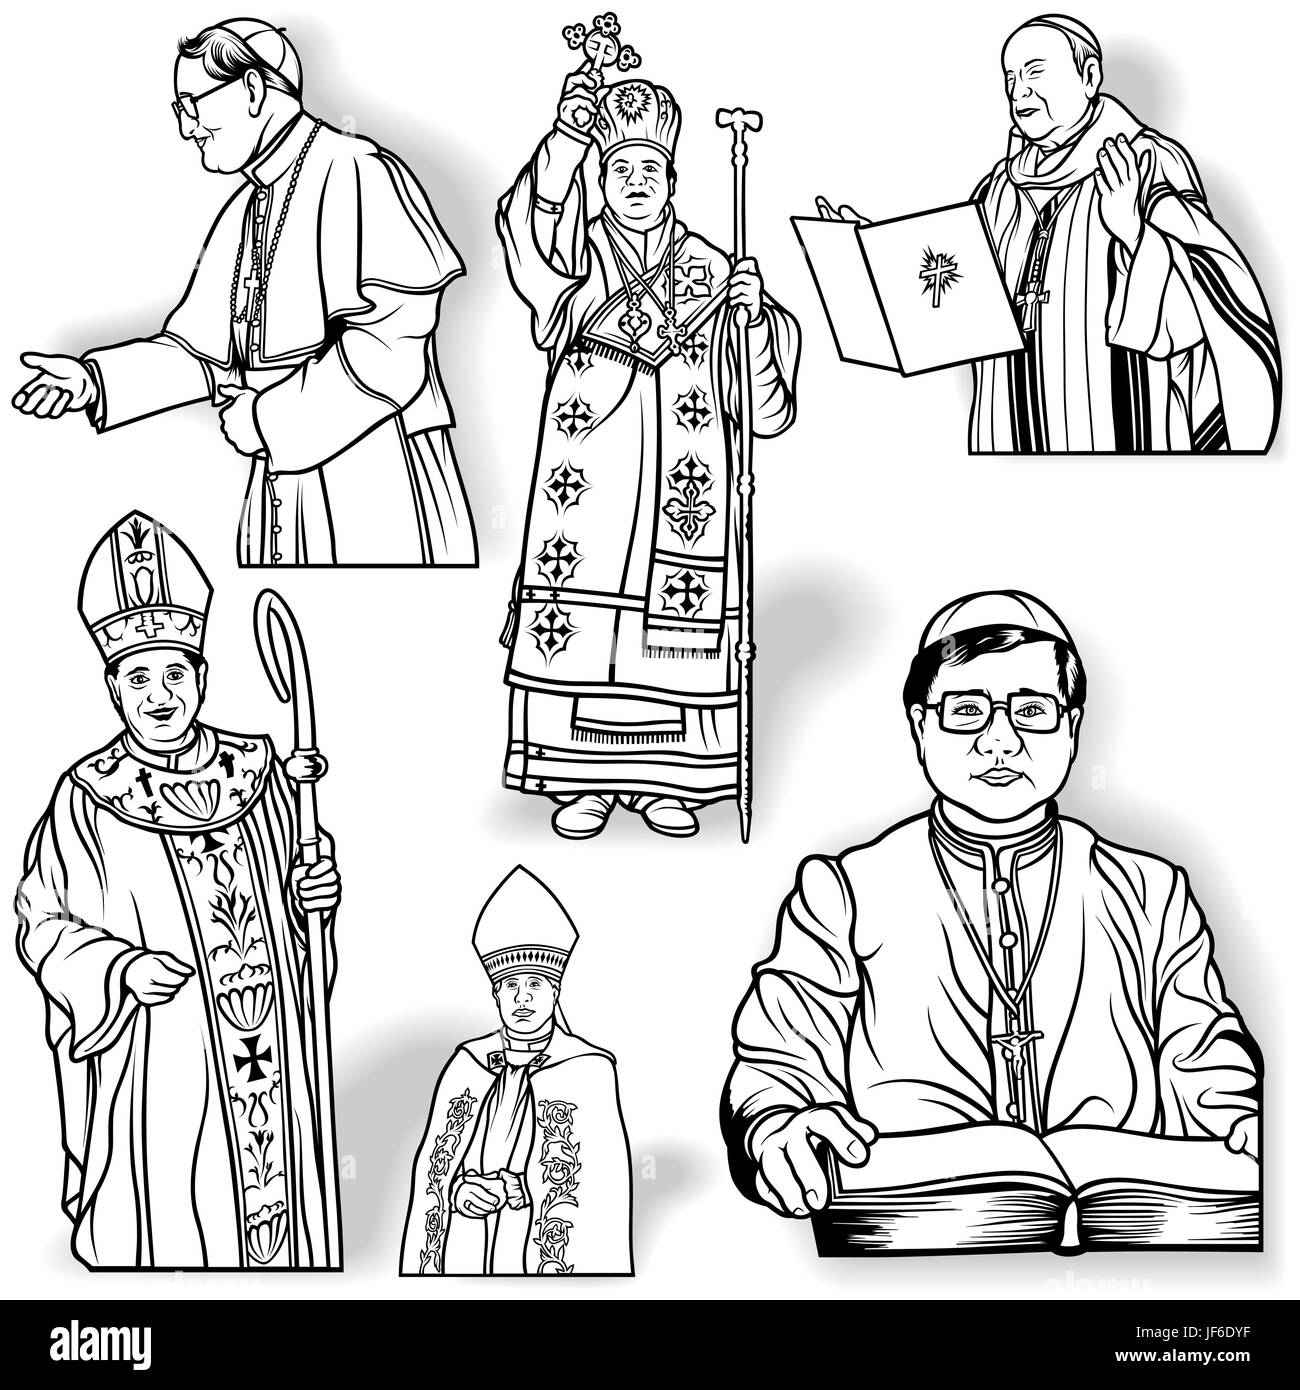 La religione, sacerdote o vescovo, monaco, il cristianesimo, il cardinale, religione, religiosi, Illustrazione Vettoriale